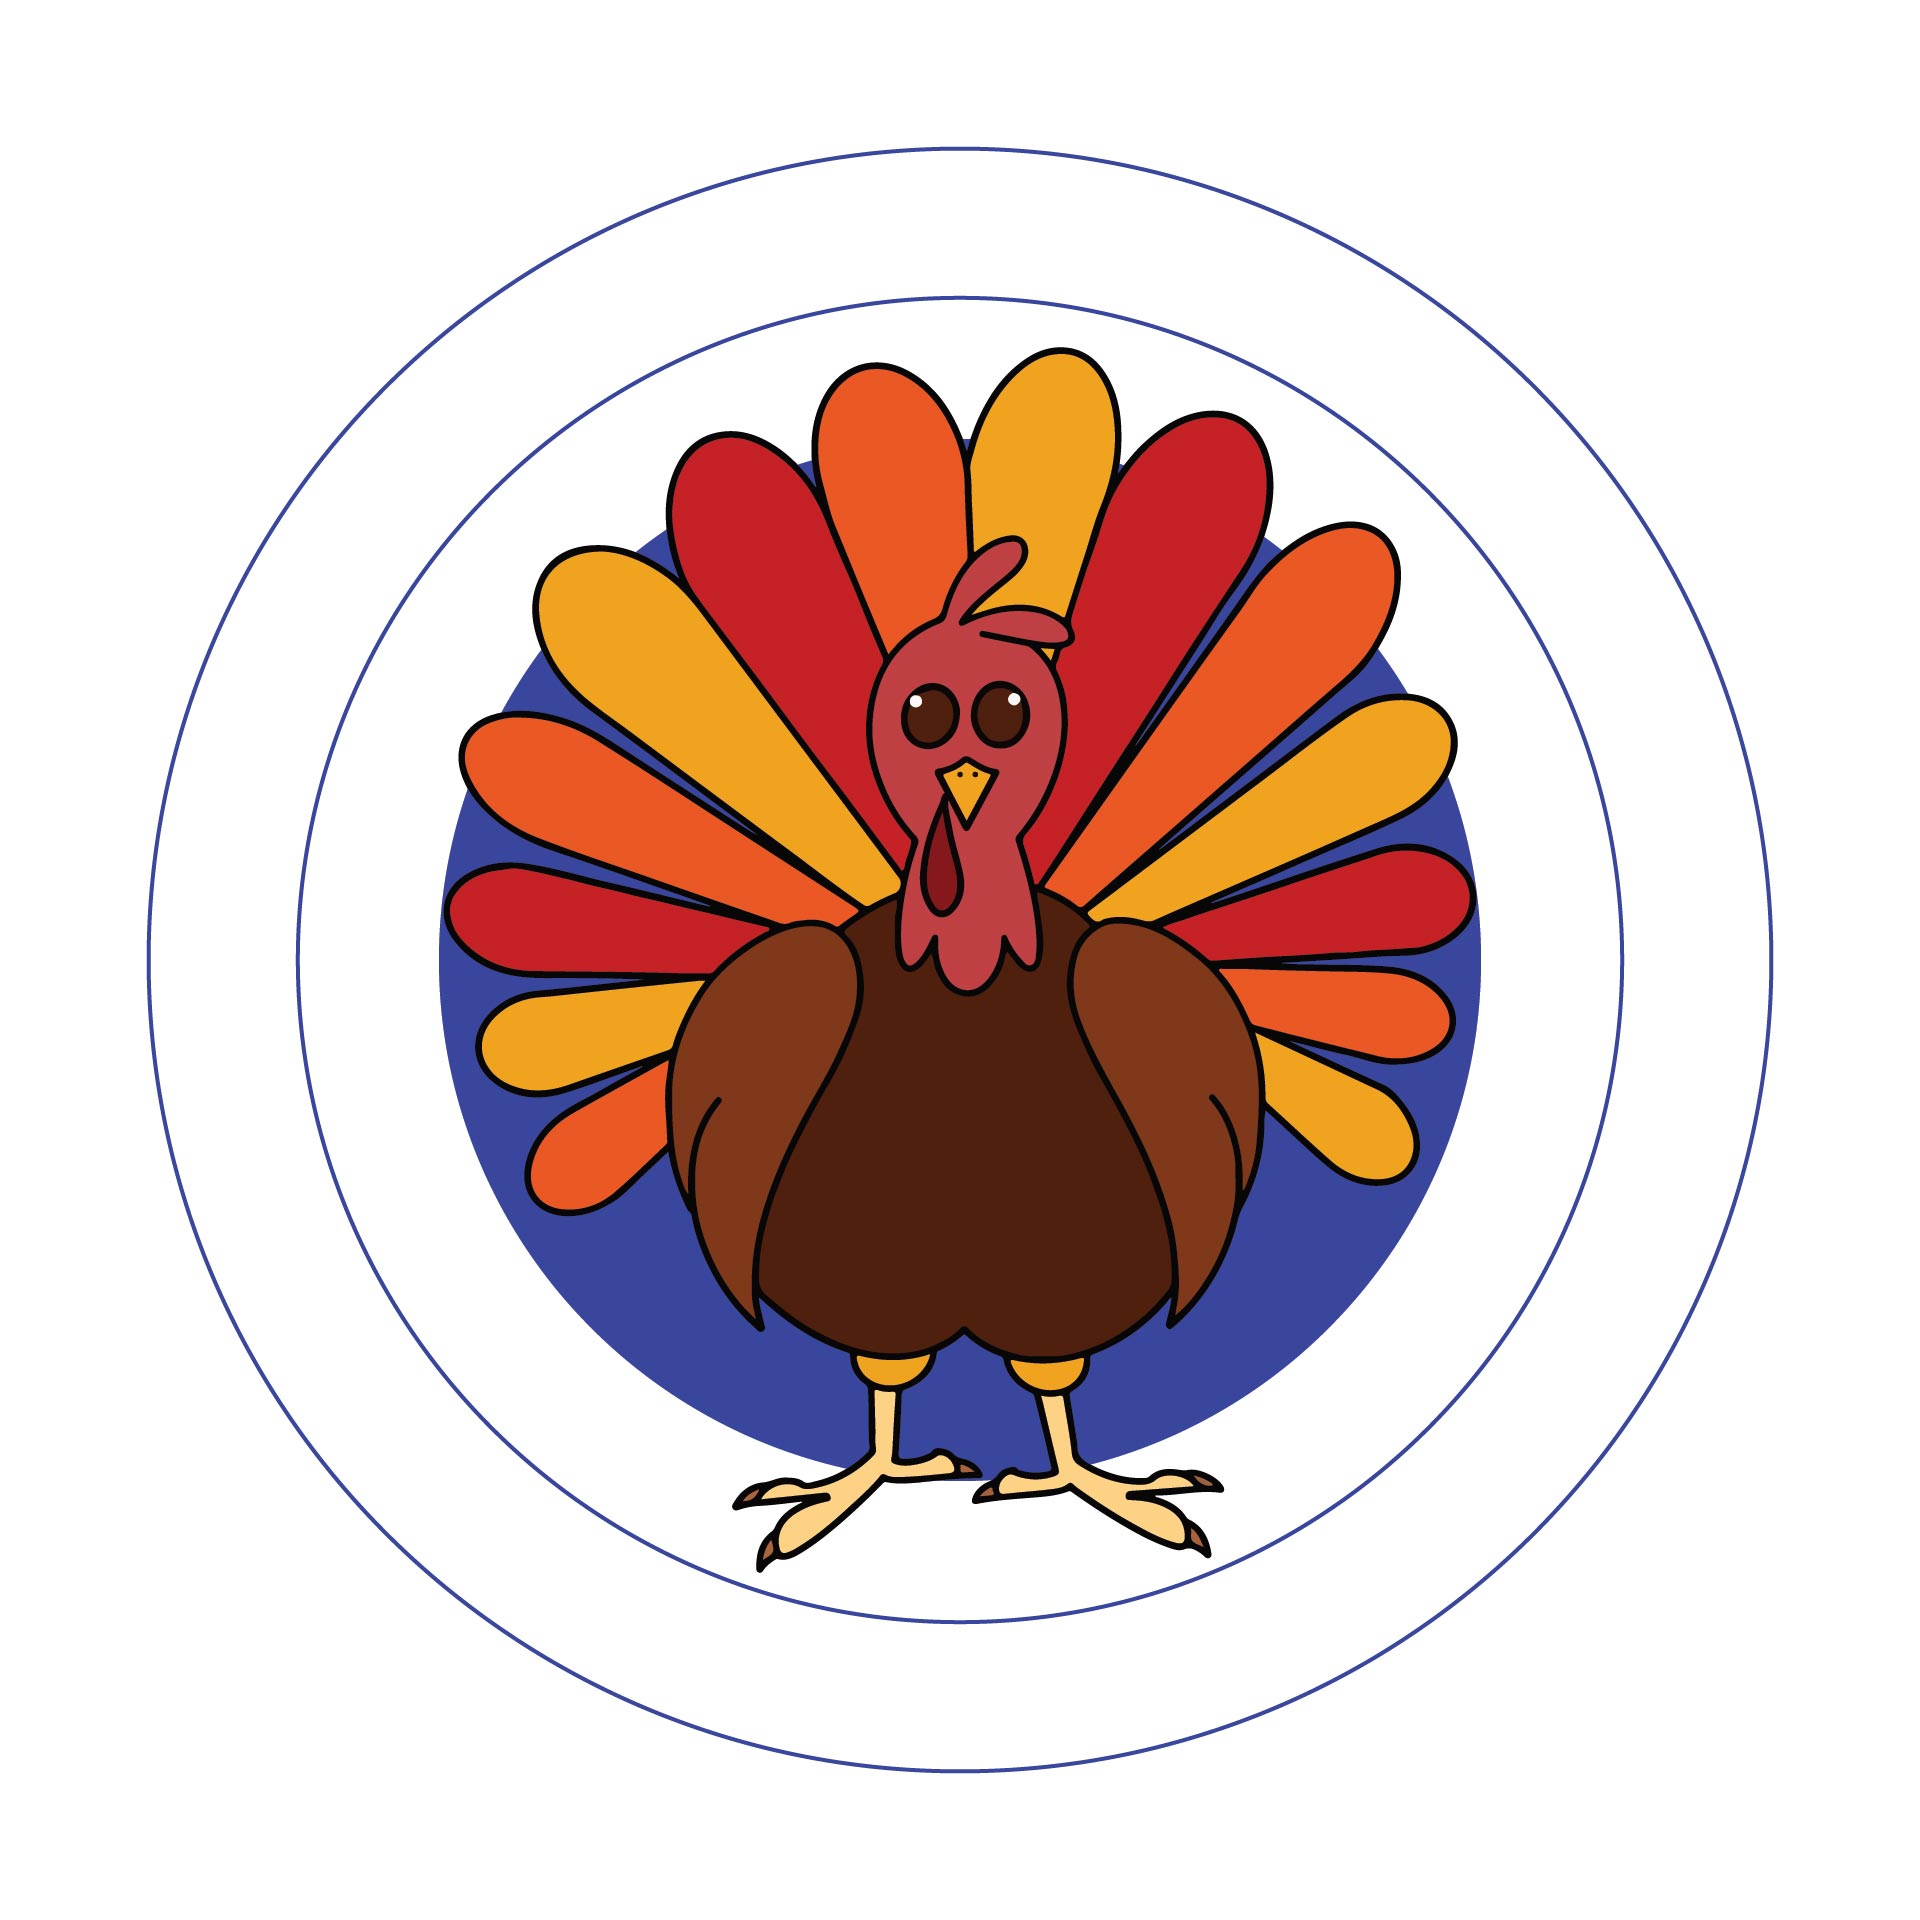 Printable Turkey Targets